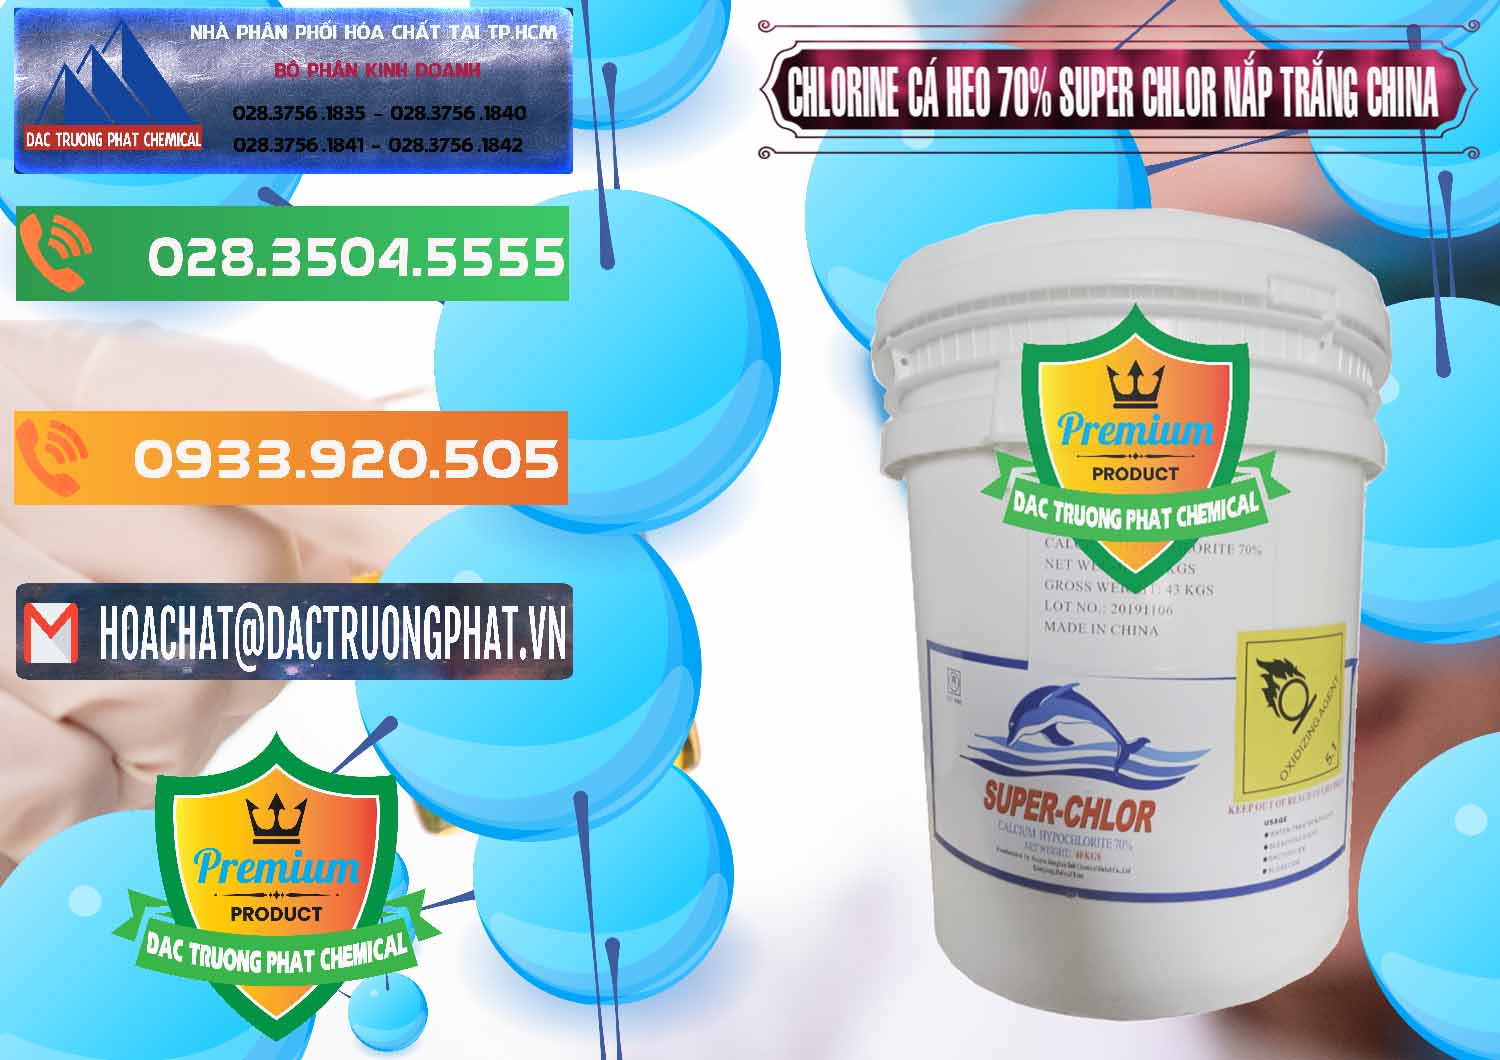 Cung cấp và bán Clorin - Chlorine Cá Heo 70% Super Chlor Nắp Trắng Trung Quốc China - 0240 - Đơn vị chuyên nhập khẩu & phân phối hóa chất tại TP.HCM - hoachatxulynuoc.com.vn